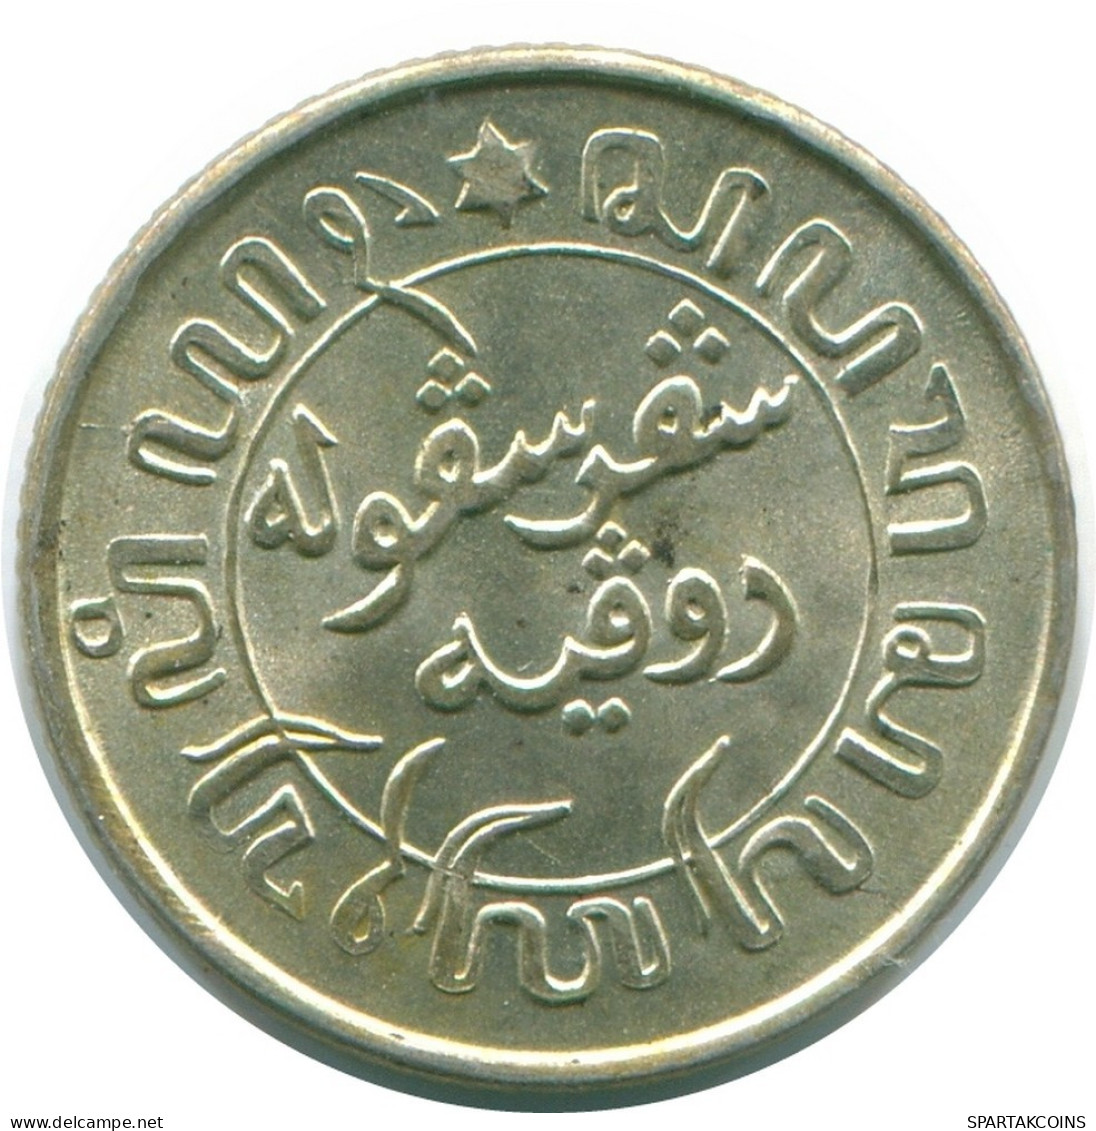 1/10 GULDEN 1942 NETHERLANDS EAST INDIES SILVER Colonial Coin #NL13953.3.U.A - Niederländisch-Indien